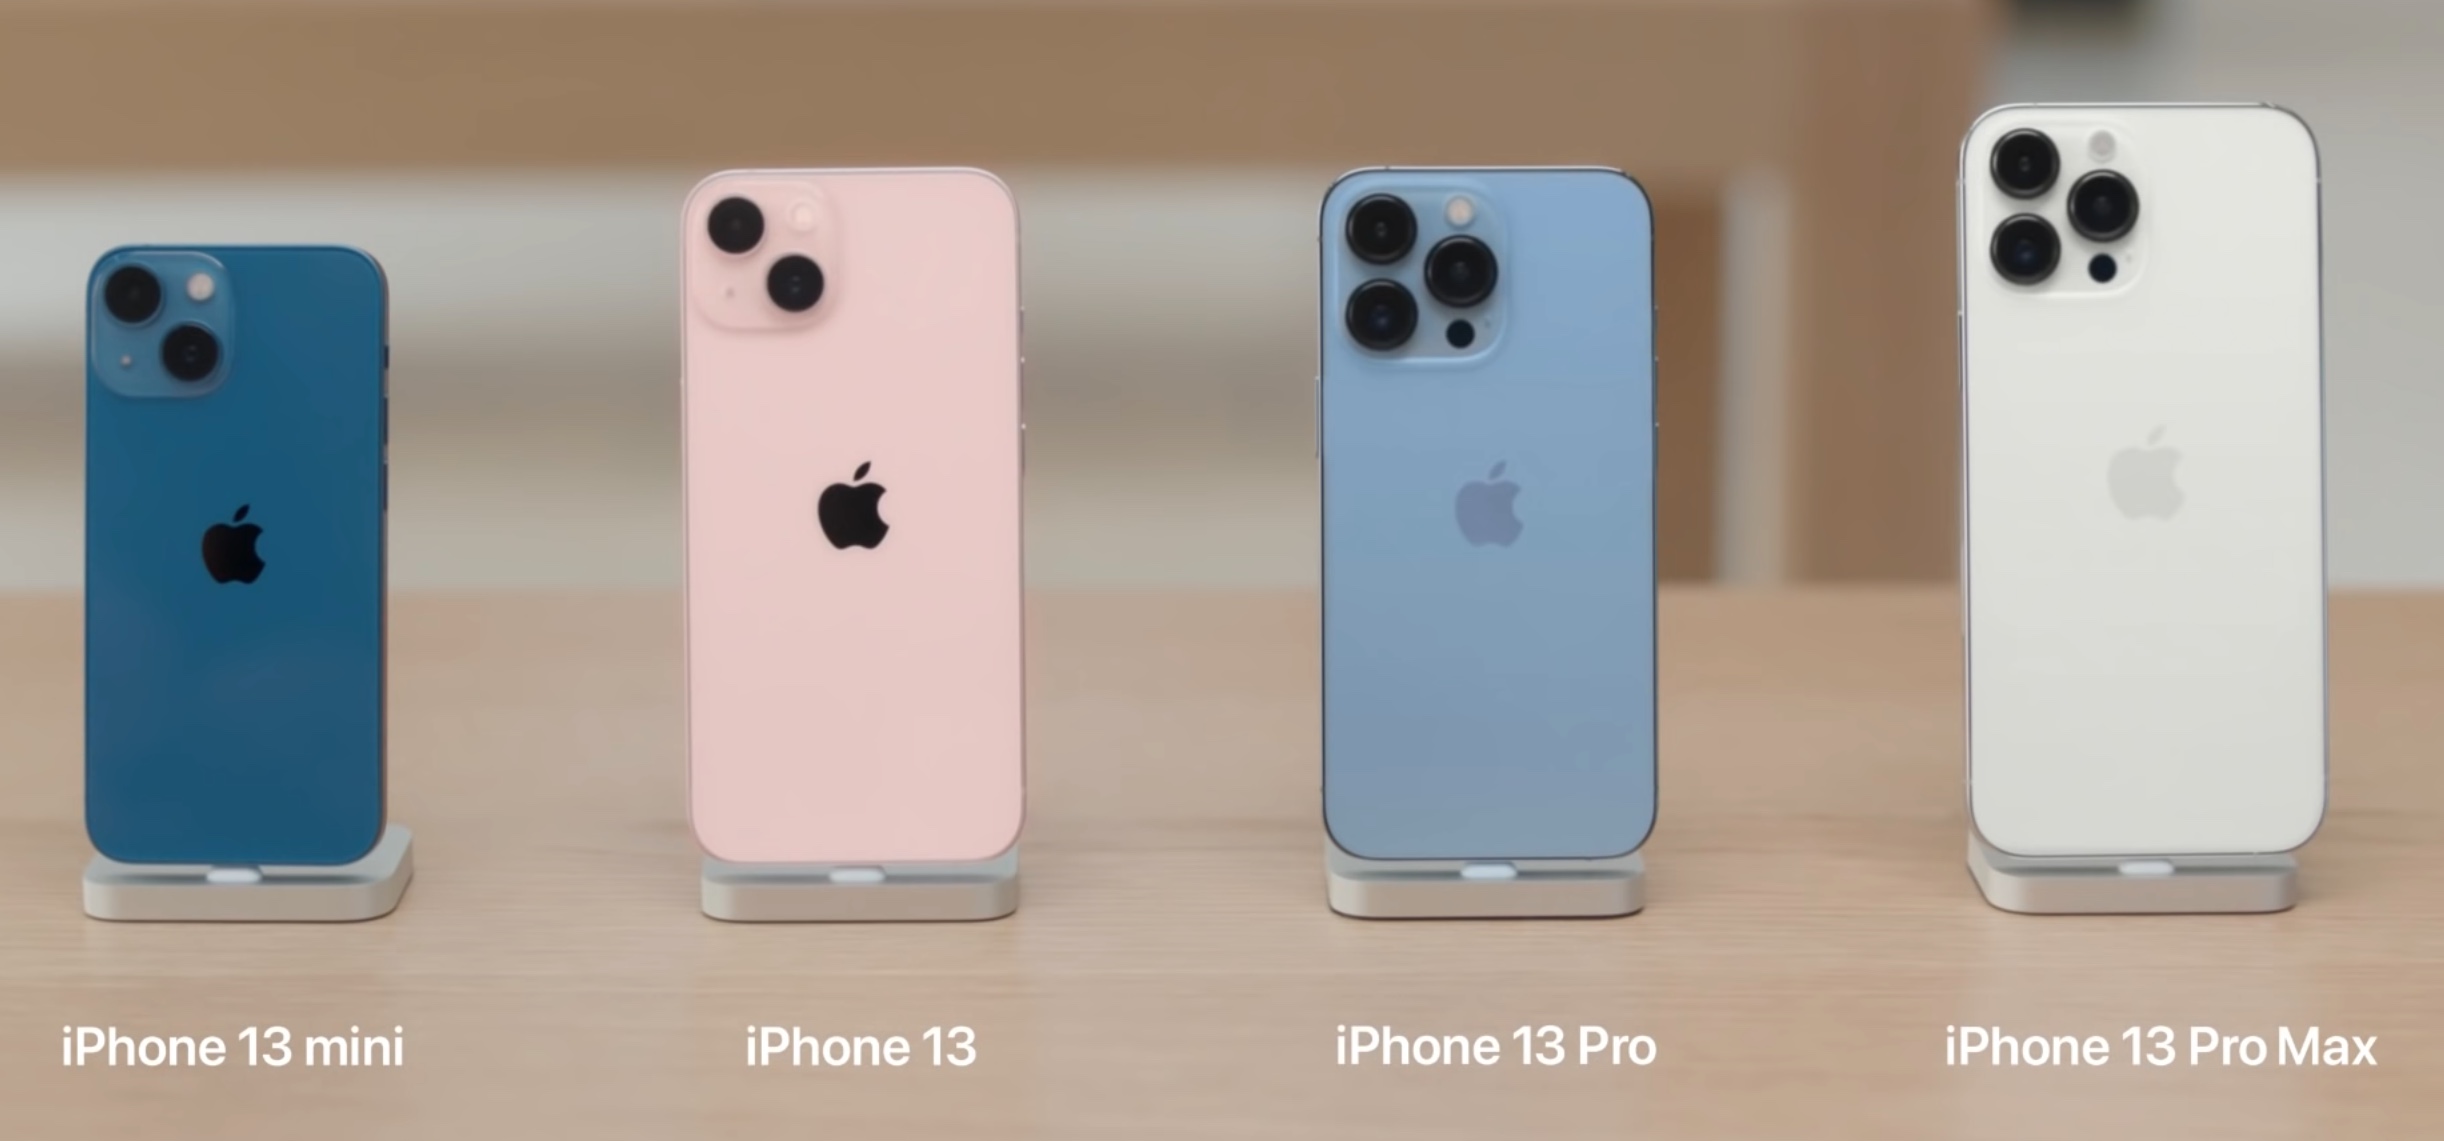 Apple condivide un tour video di iPhone 13 e iPhone 13 Pro che mostra il vero colore del dispositivo, tutti i modelli e tutti i colori.